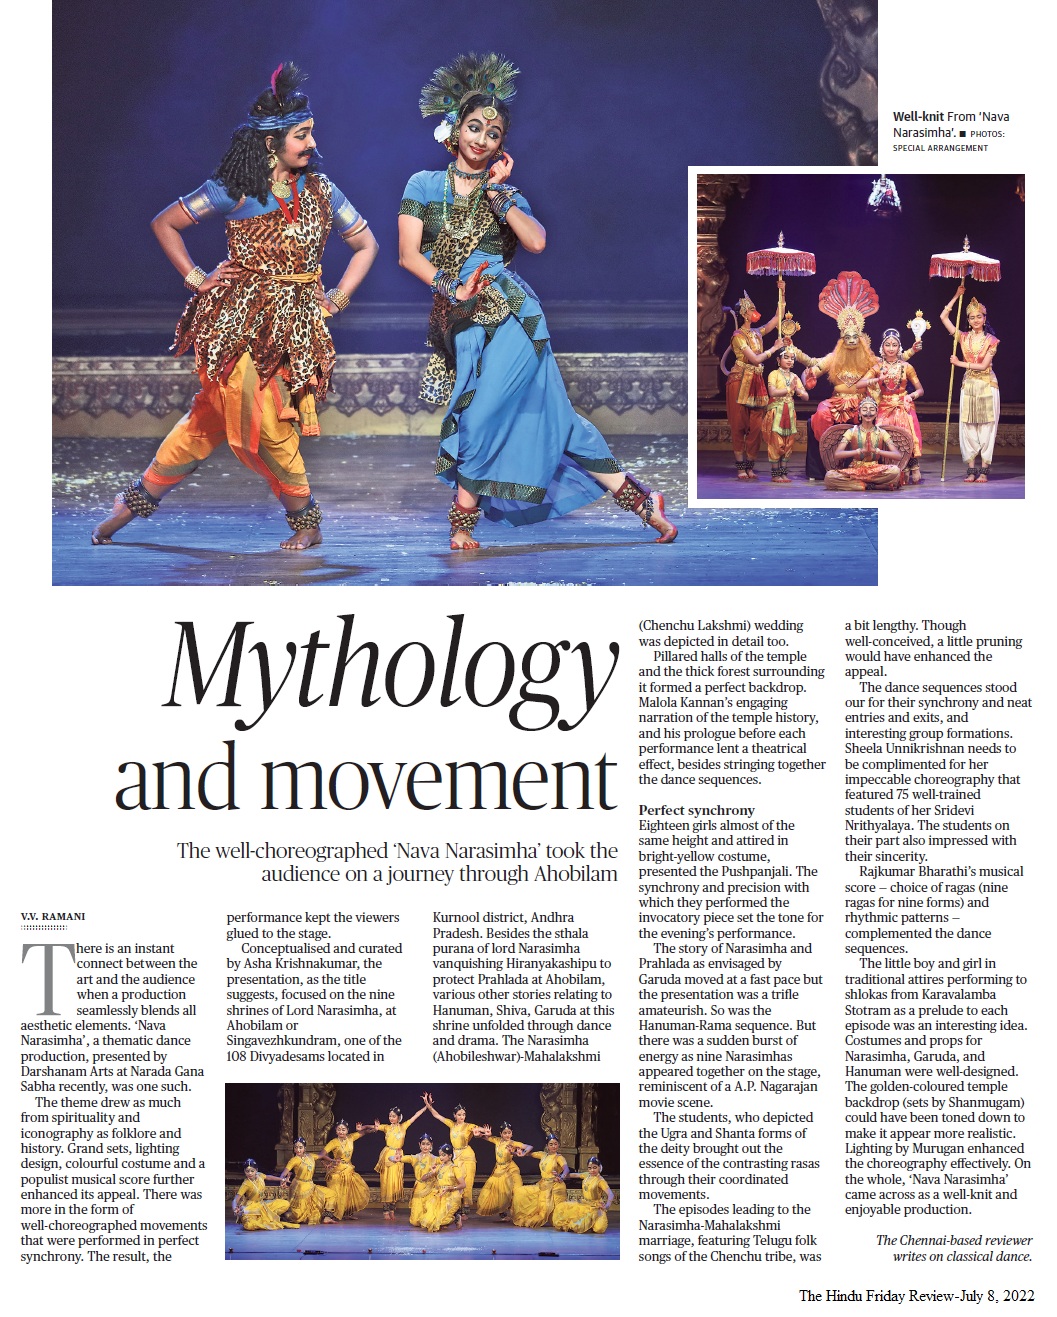 Mythology and movement - V.V. Ramani